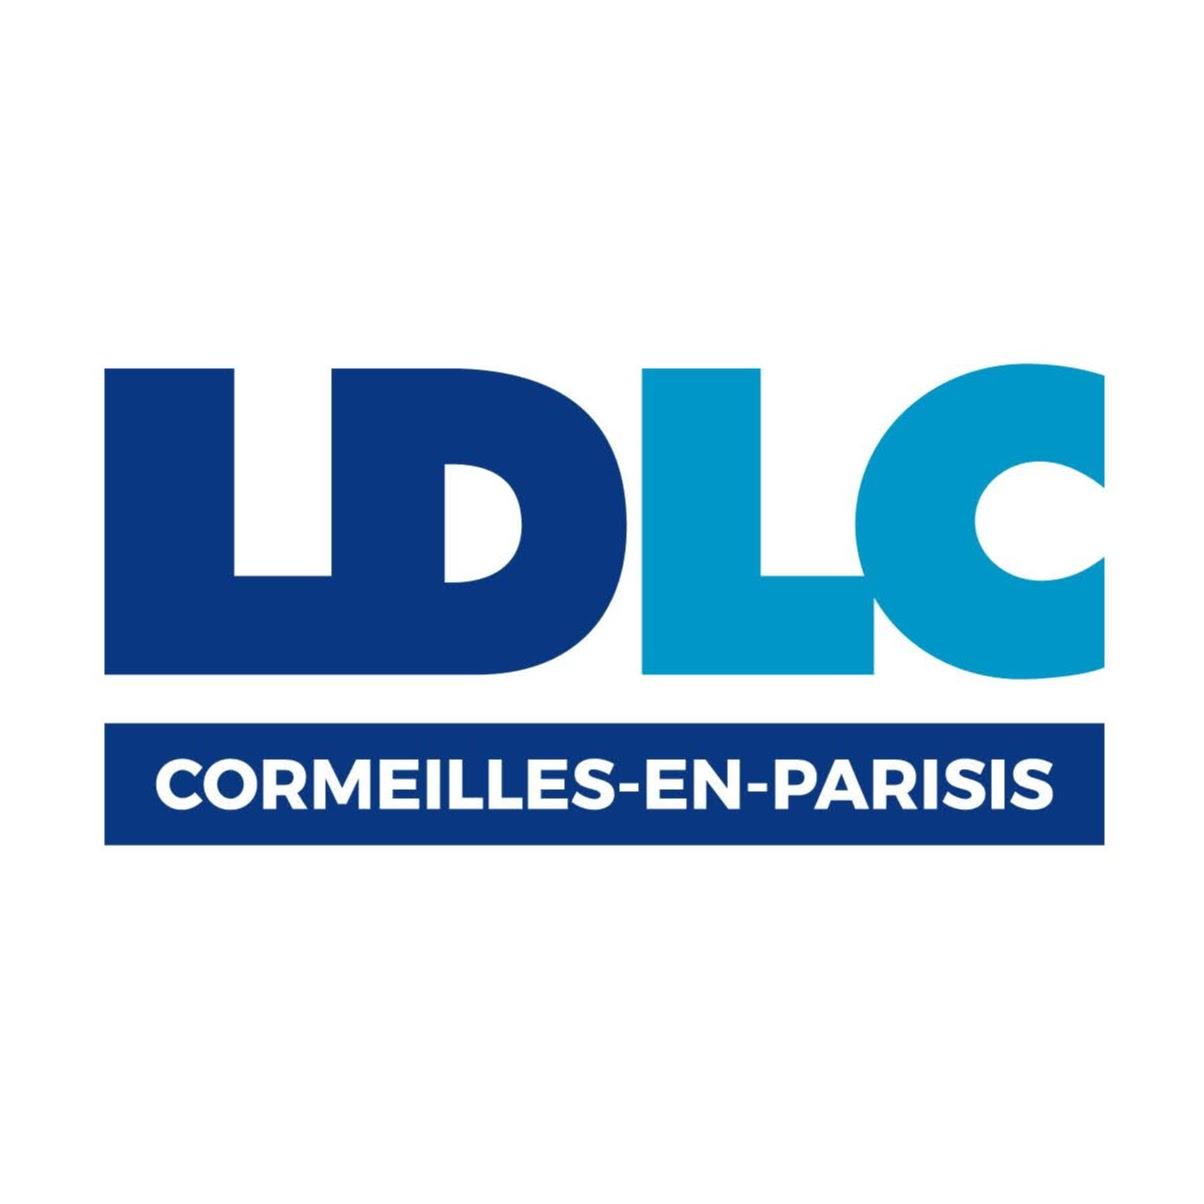 Ldlc Cormeilles-en-parisis Cormeilles En Parisis